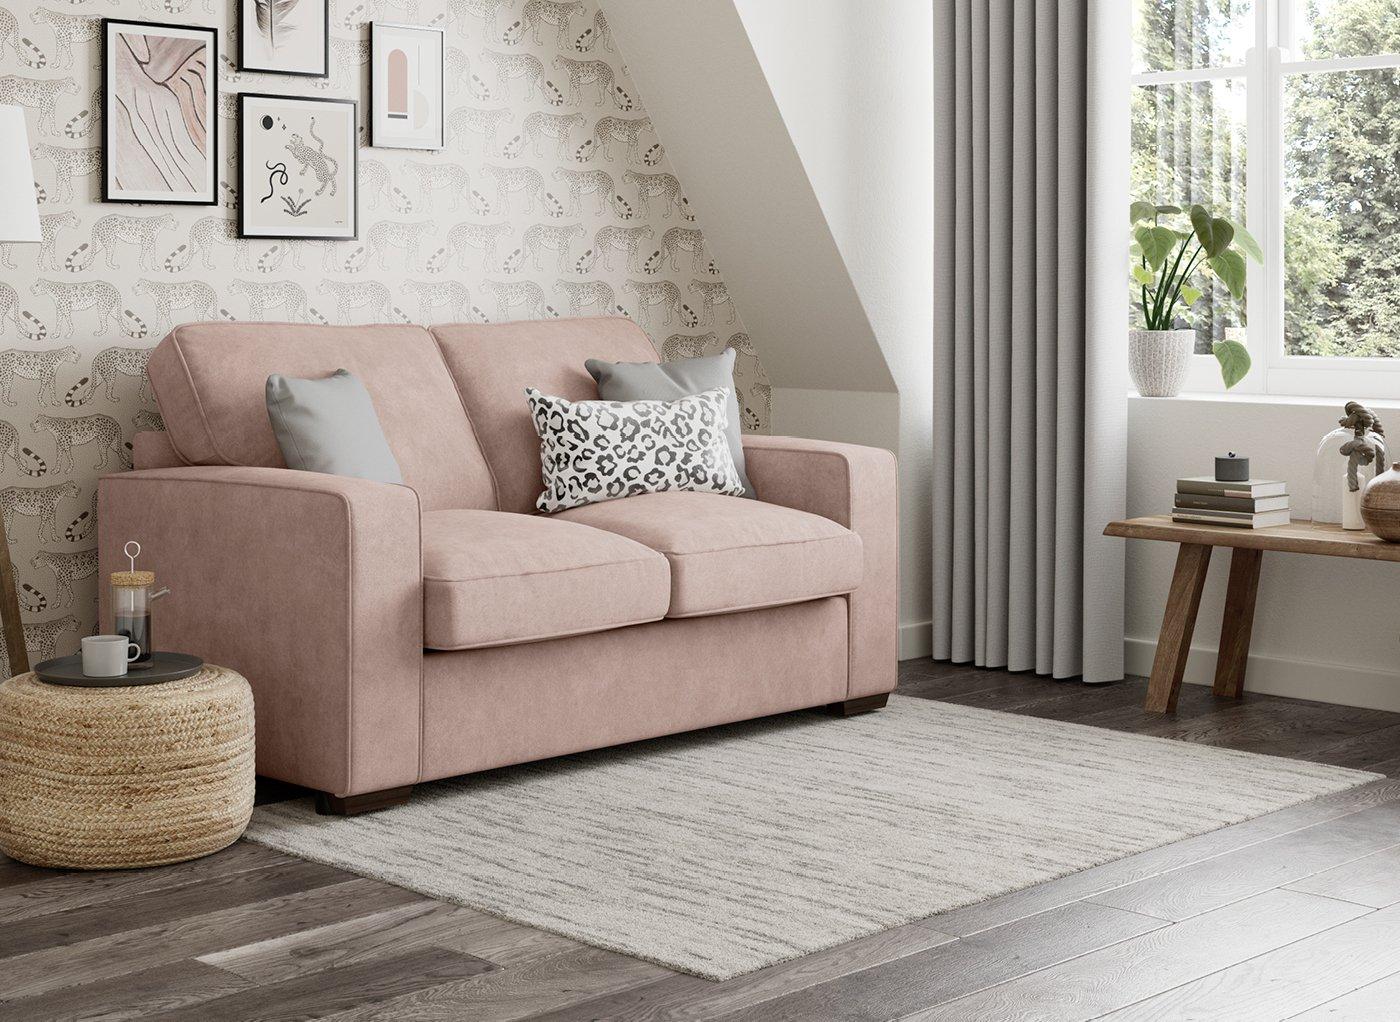 pink sofa bed melbourne